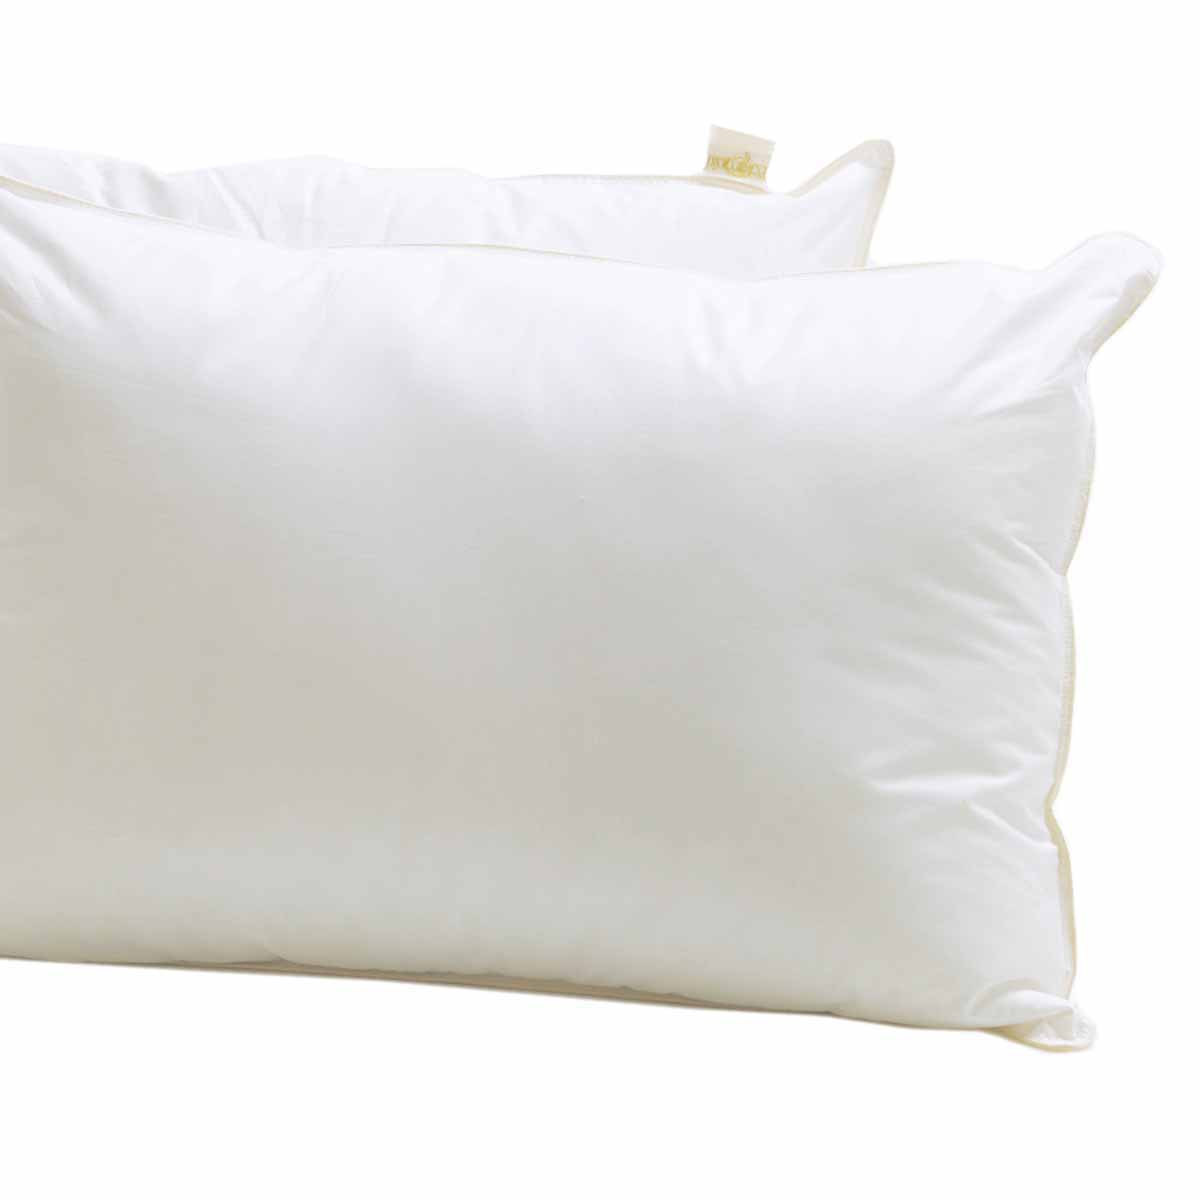 Βρεφικό Μαξιλάρι Μαλακό (35×45) Palamaiki White Comfort Baby Pillow Polyester